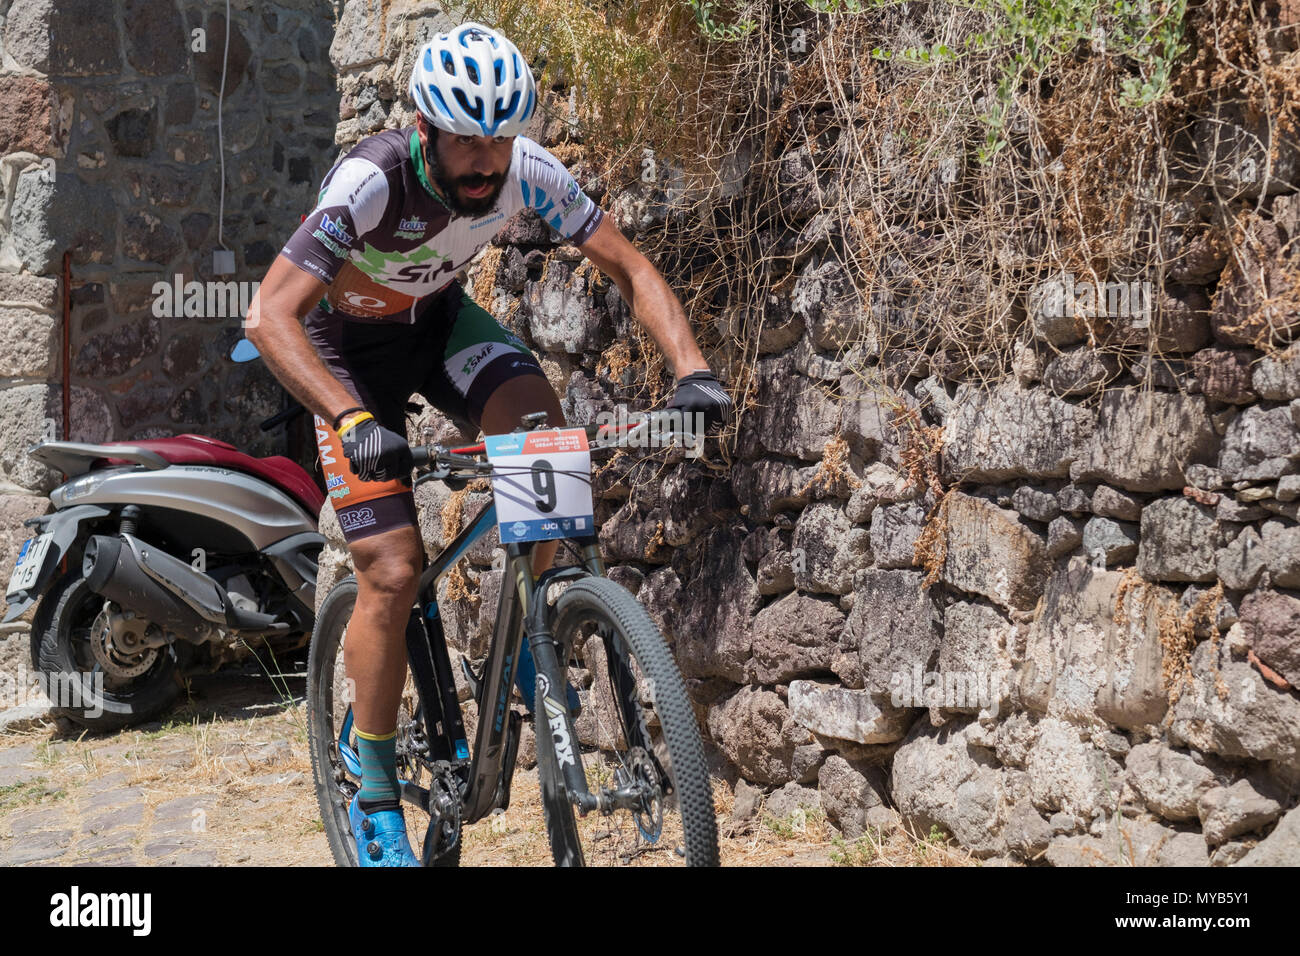 Cycliste grec participe à une course de vtt international dans le village grec de Molyvos sur l'île de Lesbos Banque D'Images